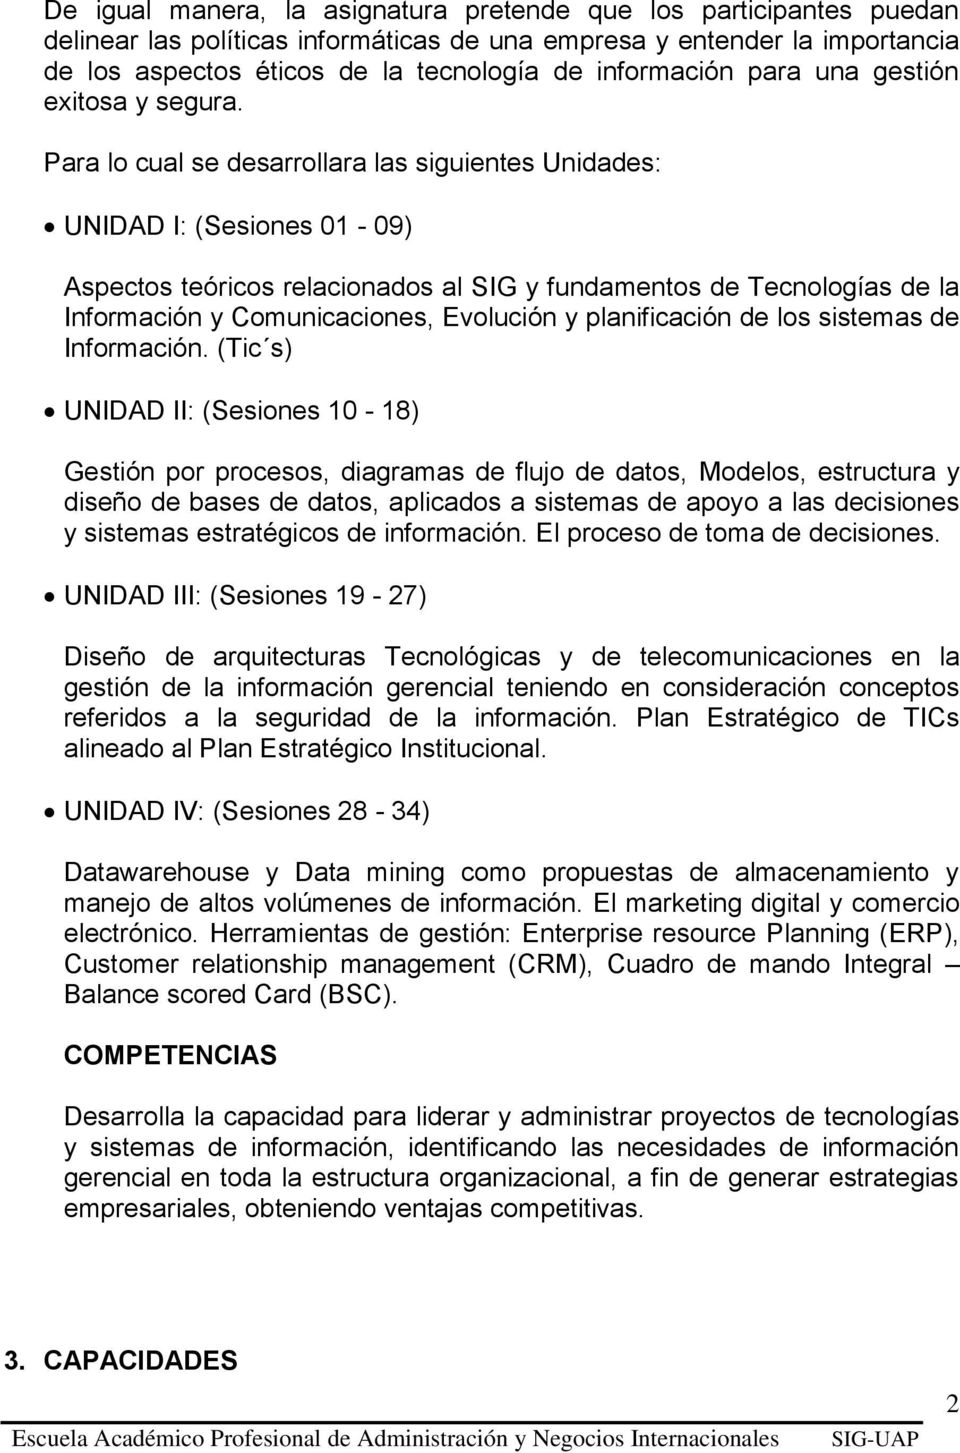 Para lo cual se desarrollara las siguientes Unidades: UNIDAD I: (Sesiones 01-09) Aspectos teóricos relacionados al SIG y fundamentos de Tecnologías de la Información y Comunicaciones, Evolución y